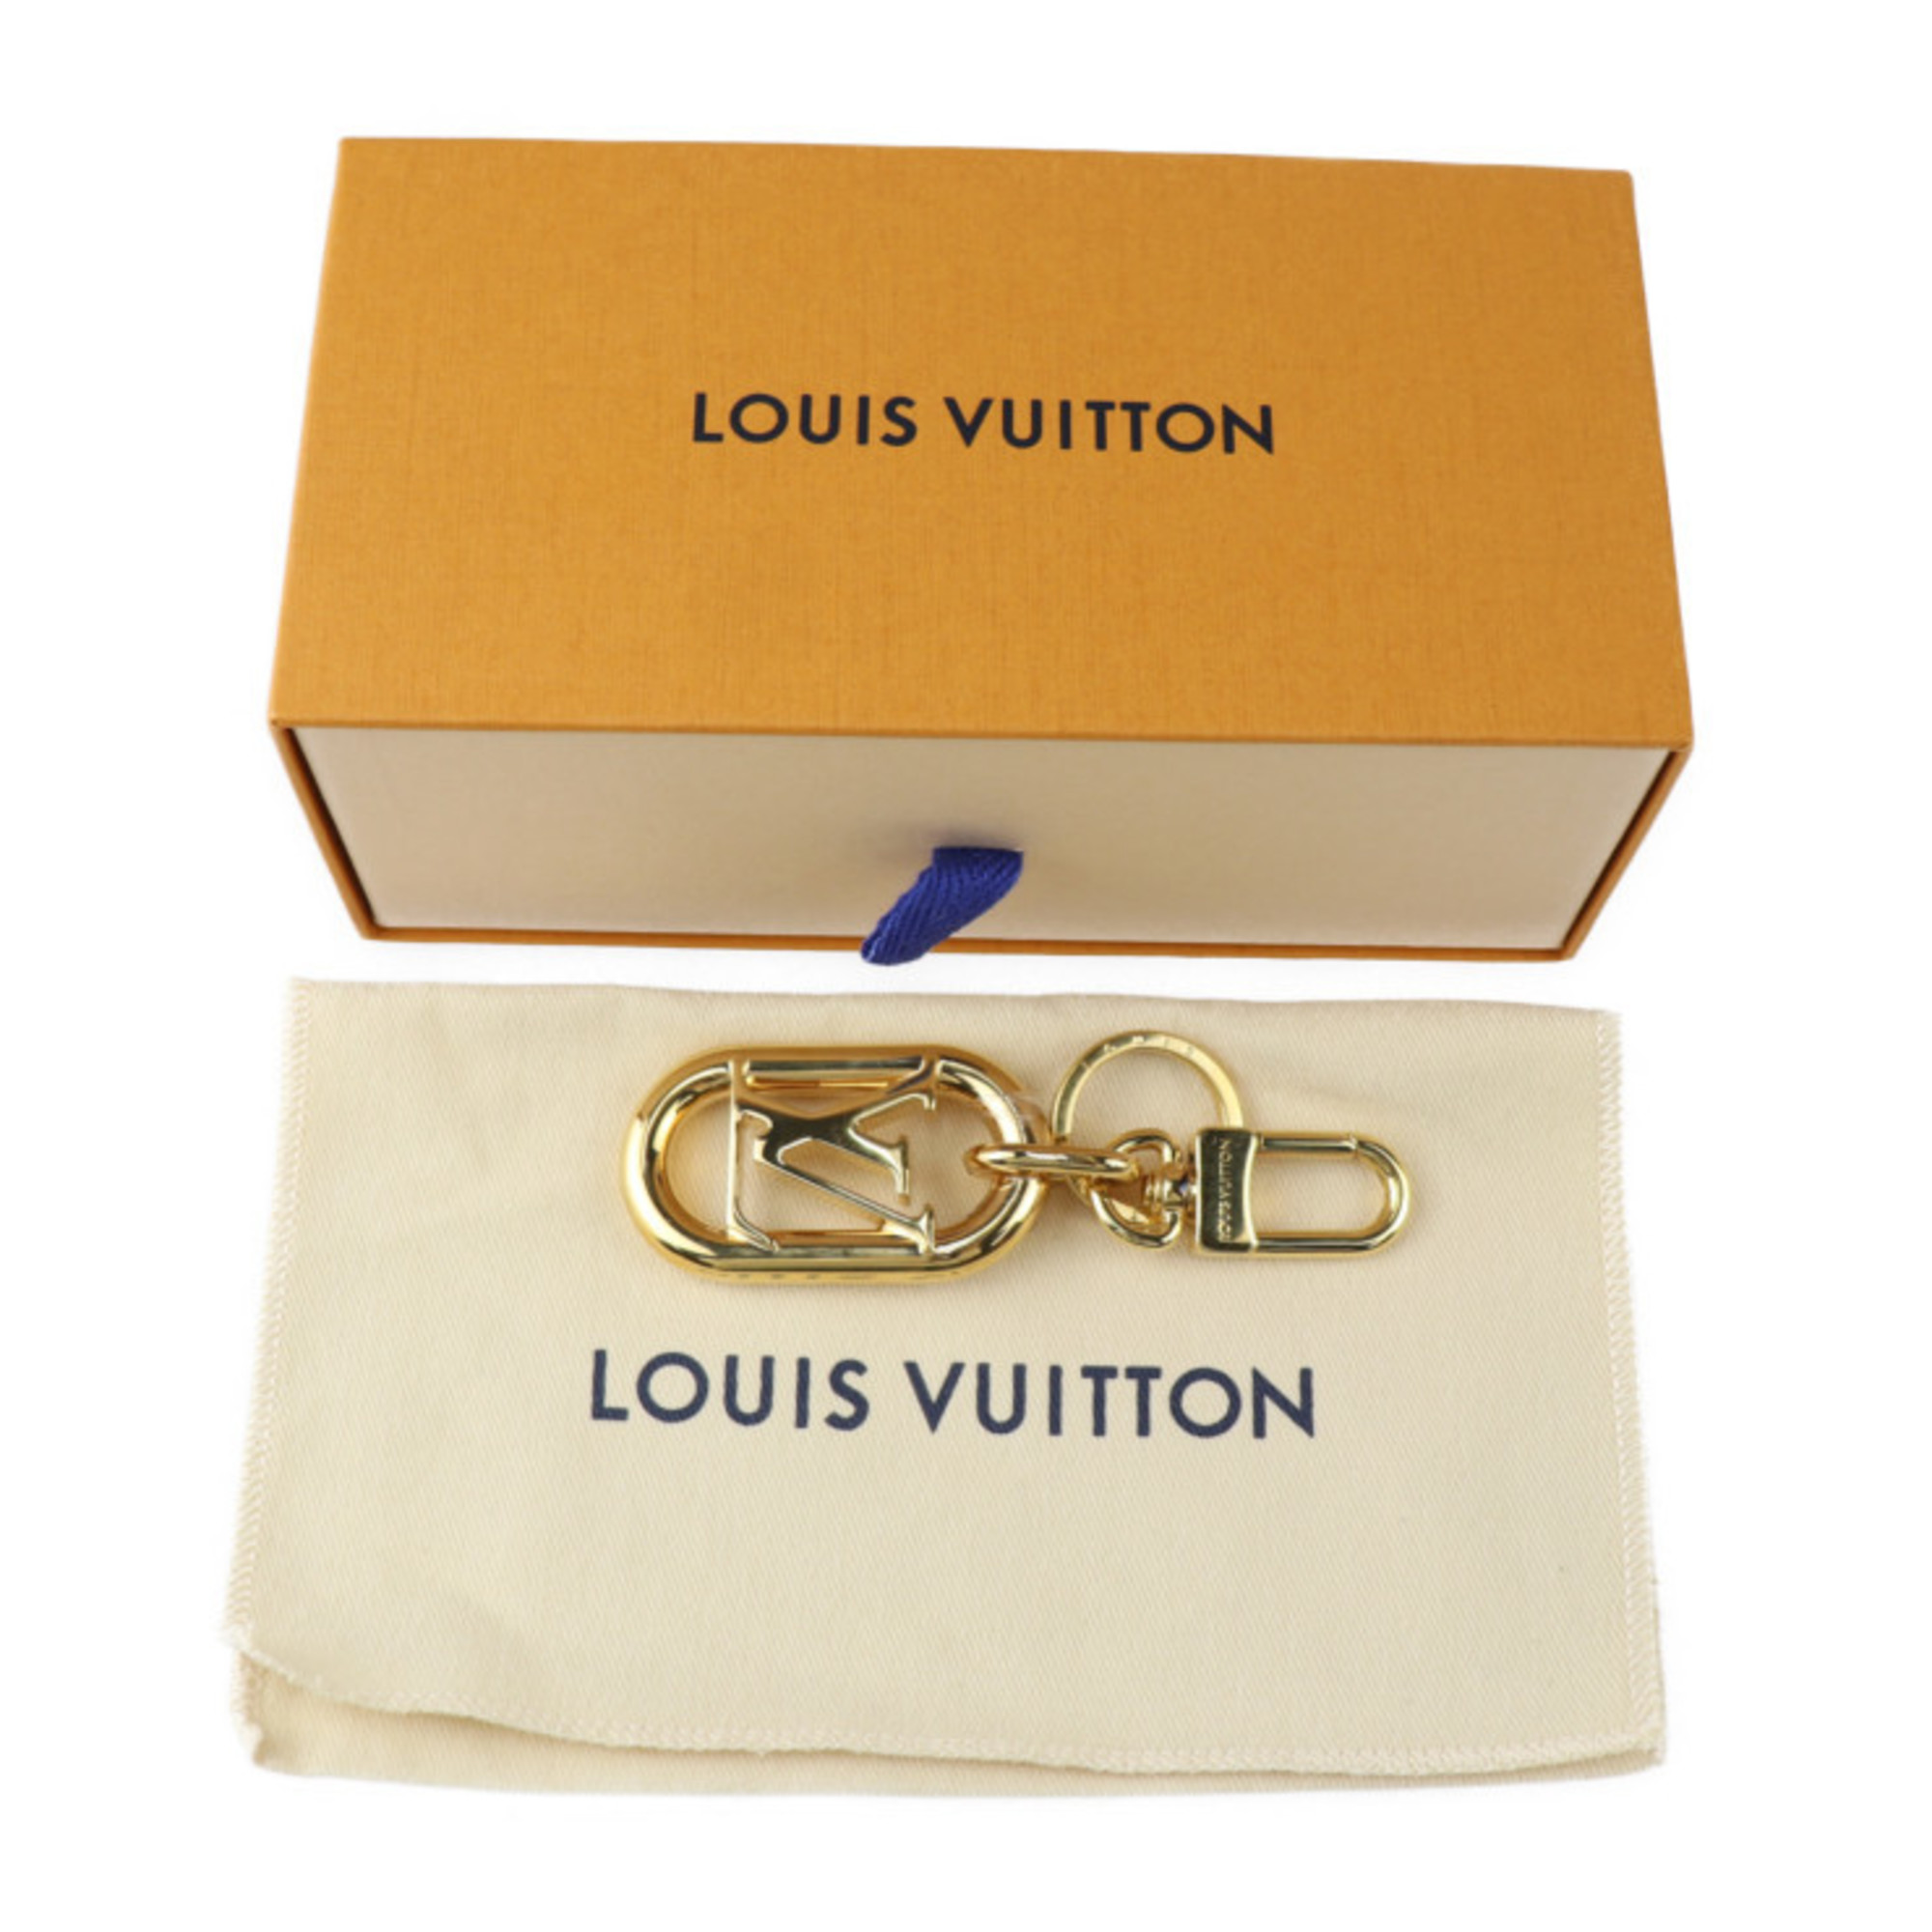 LOUIS VUITTON Porte Clé LV Link Keychain M00824 Metal Gold Keyring Bag Charm